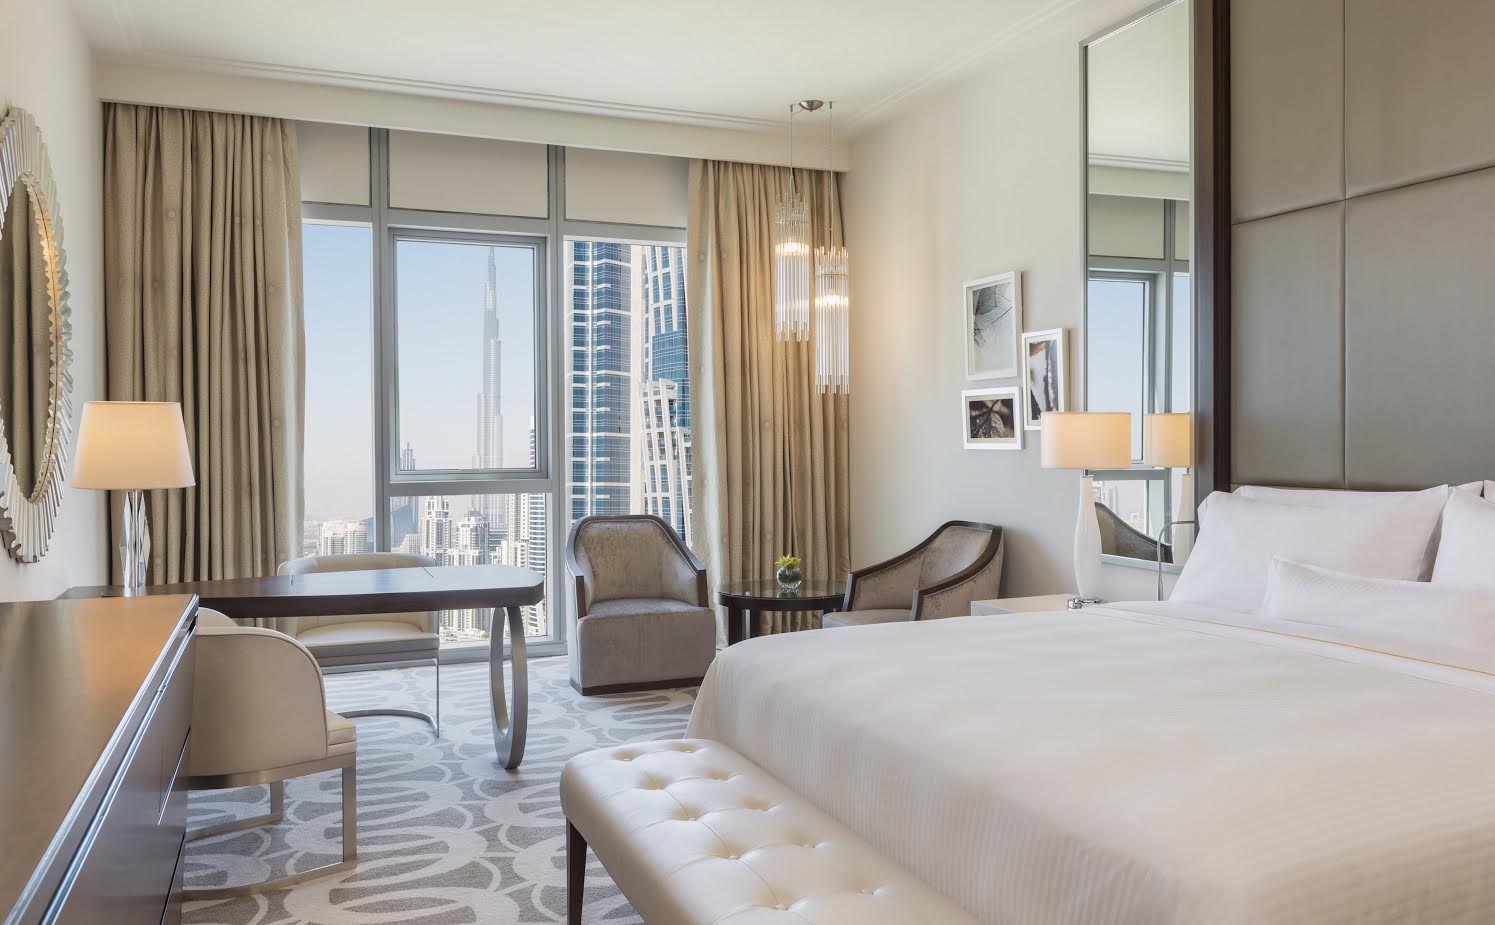 فندق ويستن دبي يقدم عرض الإقامة #1004FORREAL